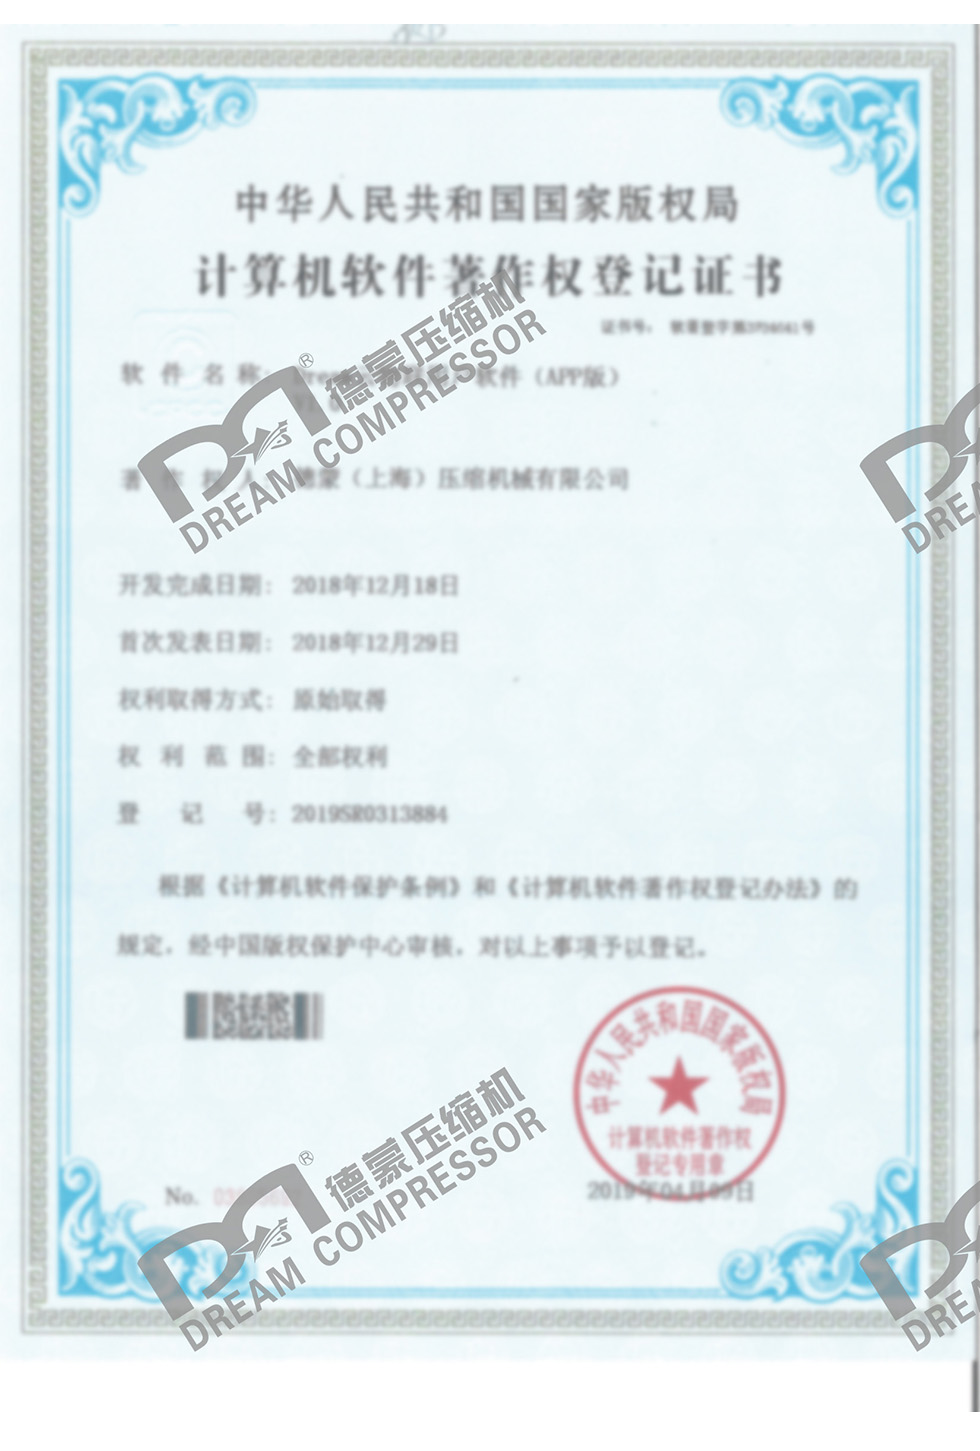 计算机软件著作权登记证书-1.jpg